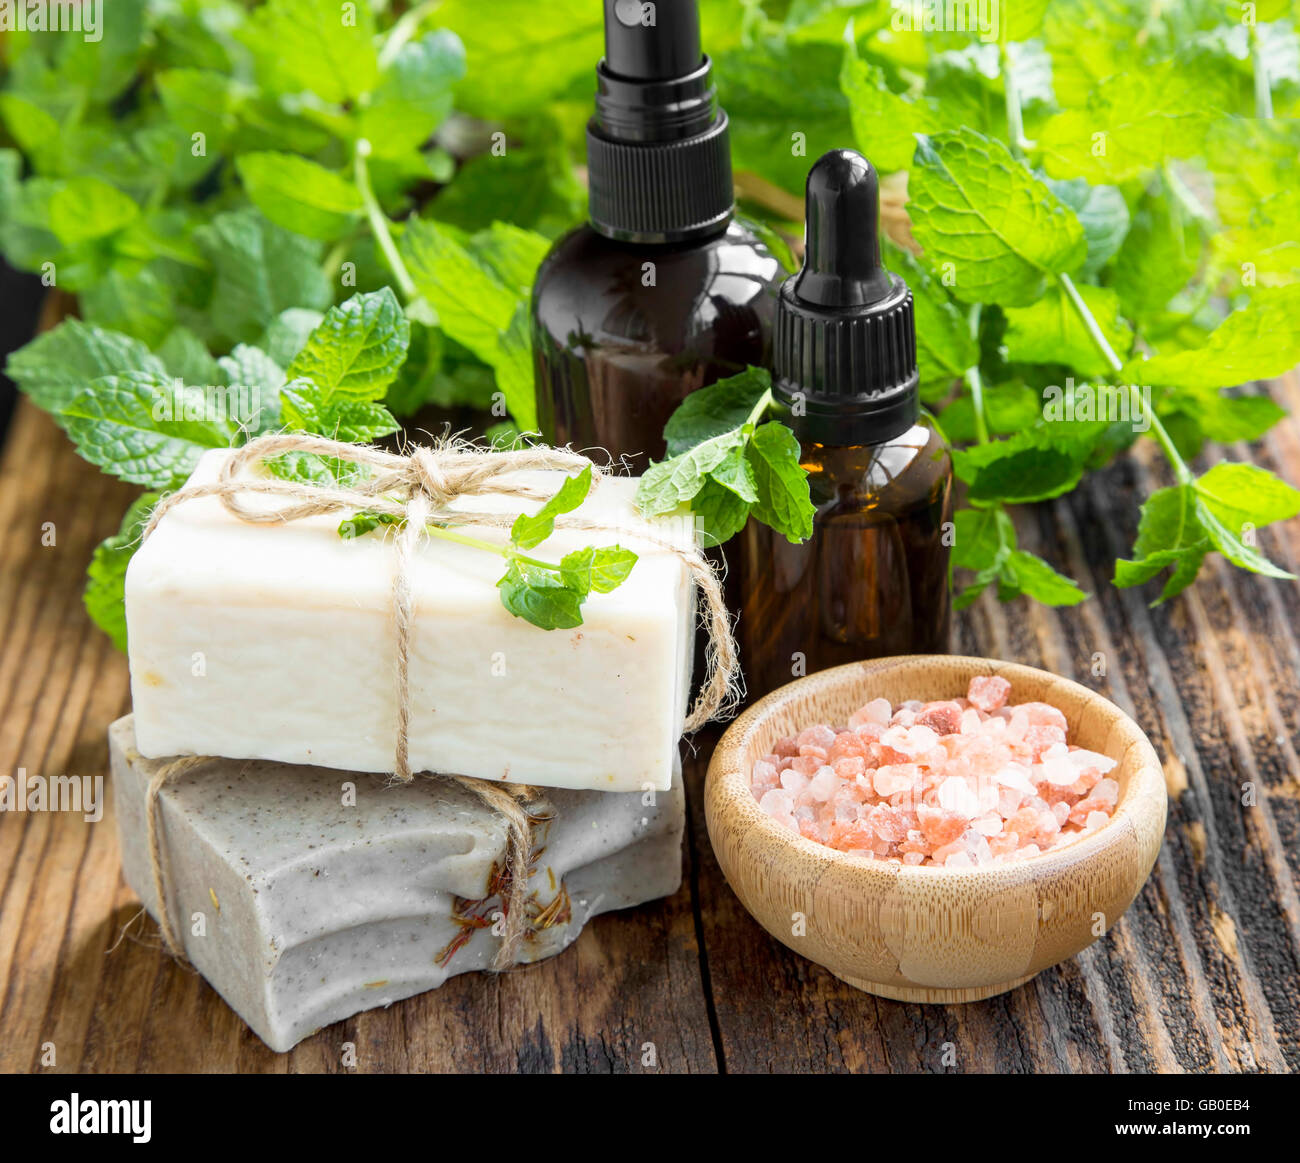 Natürliche Wellness Minzöl, natürliche Seife, Bad Salz und Minze Pflanzen  auf hölzernen Hintergrund Stockfotografie - Alamy